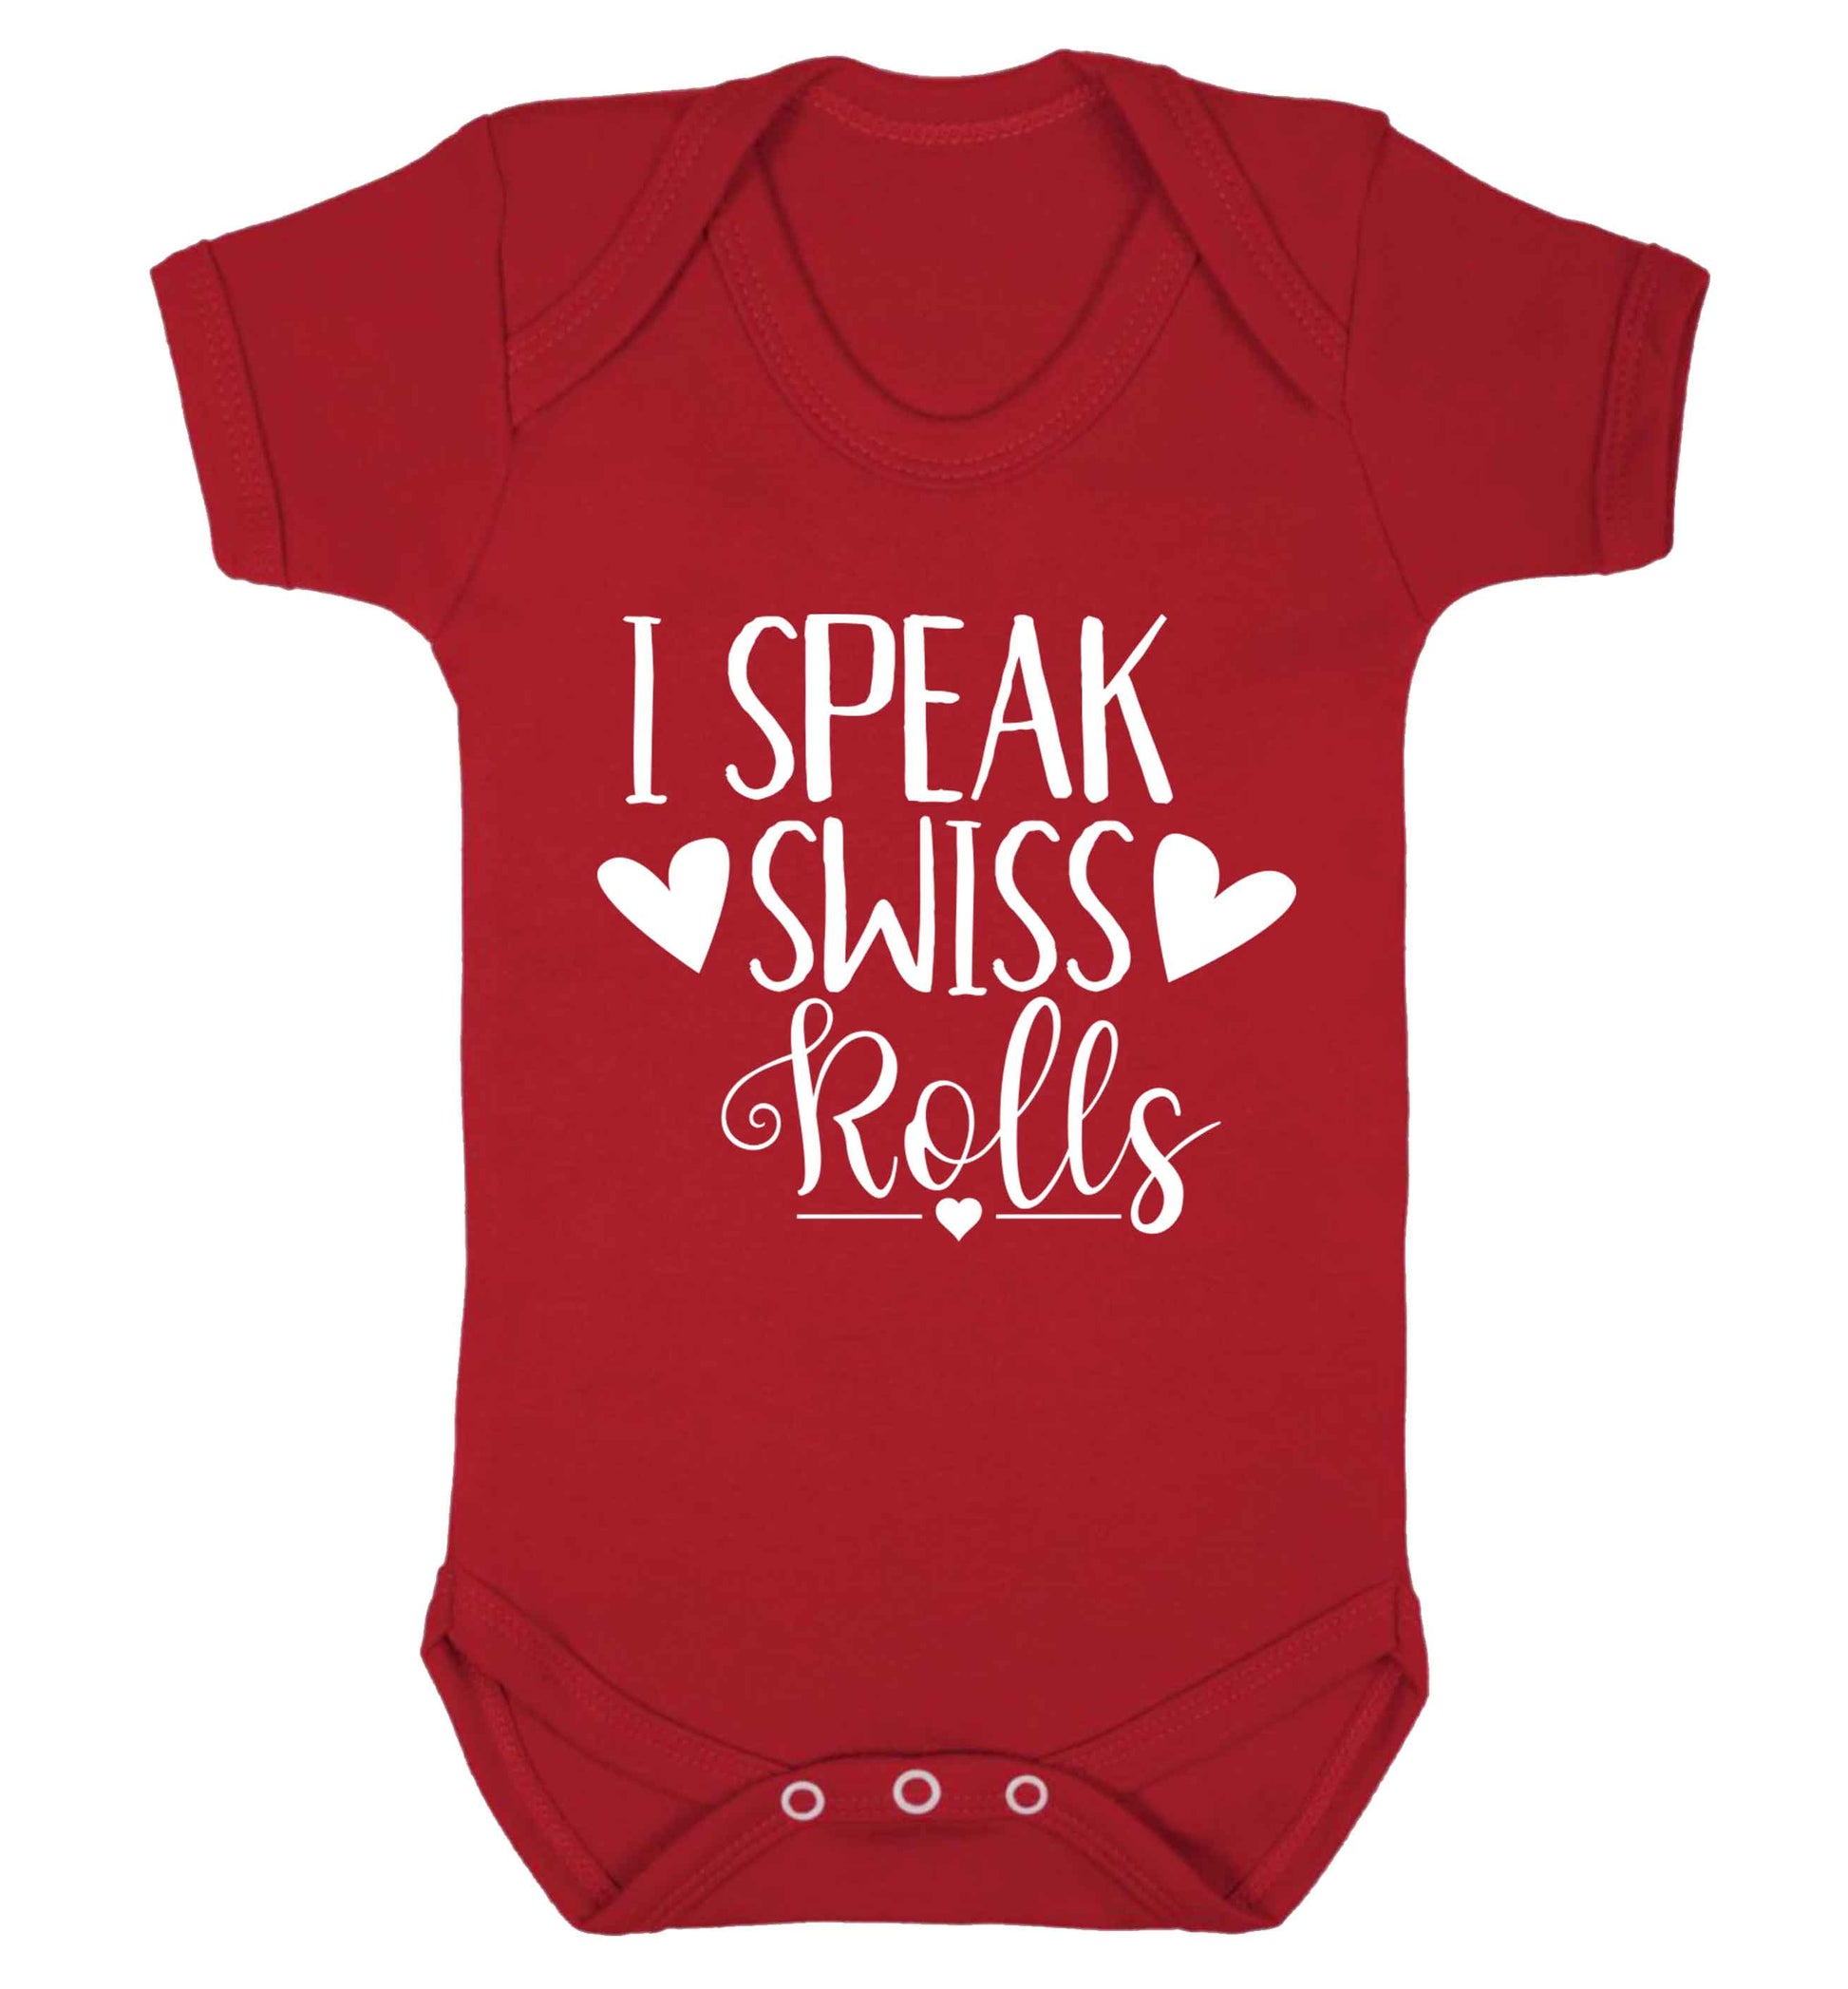 I speak swiss..rolls Baby Vest red 18-24 months